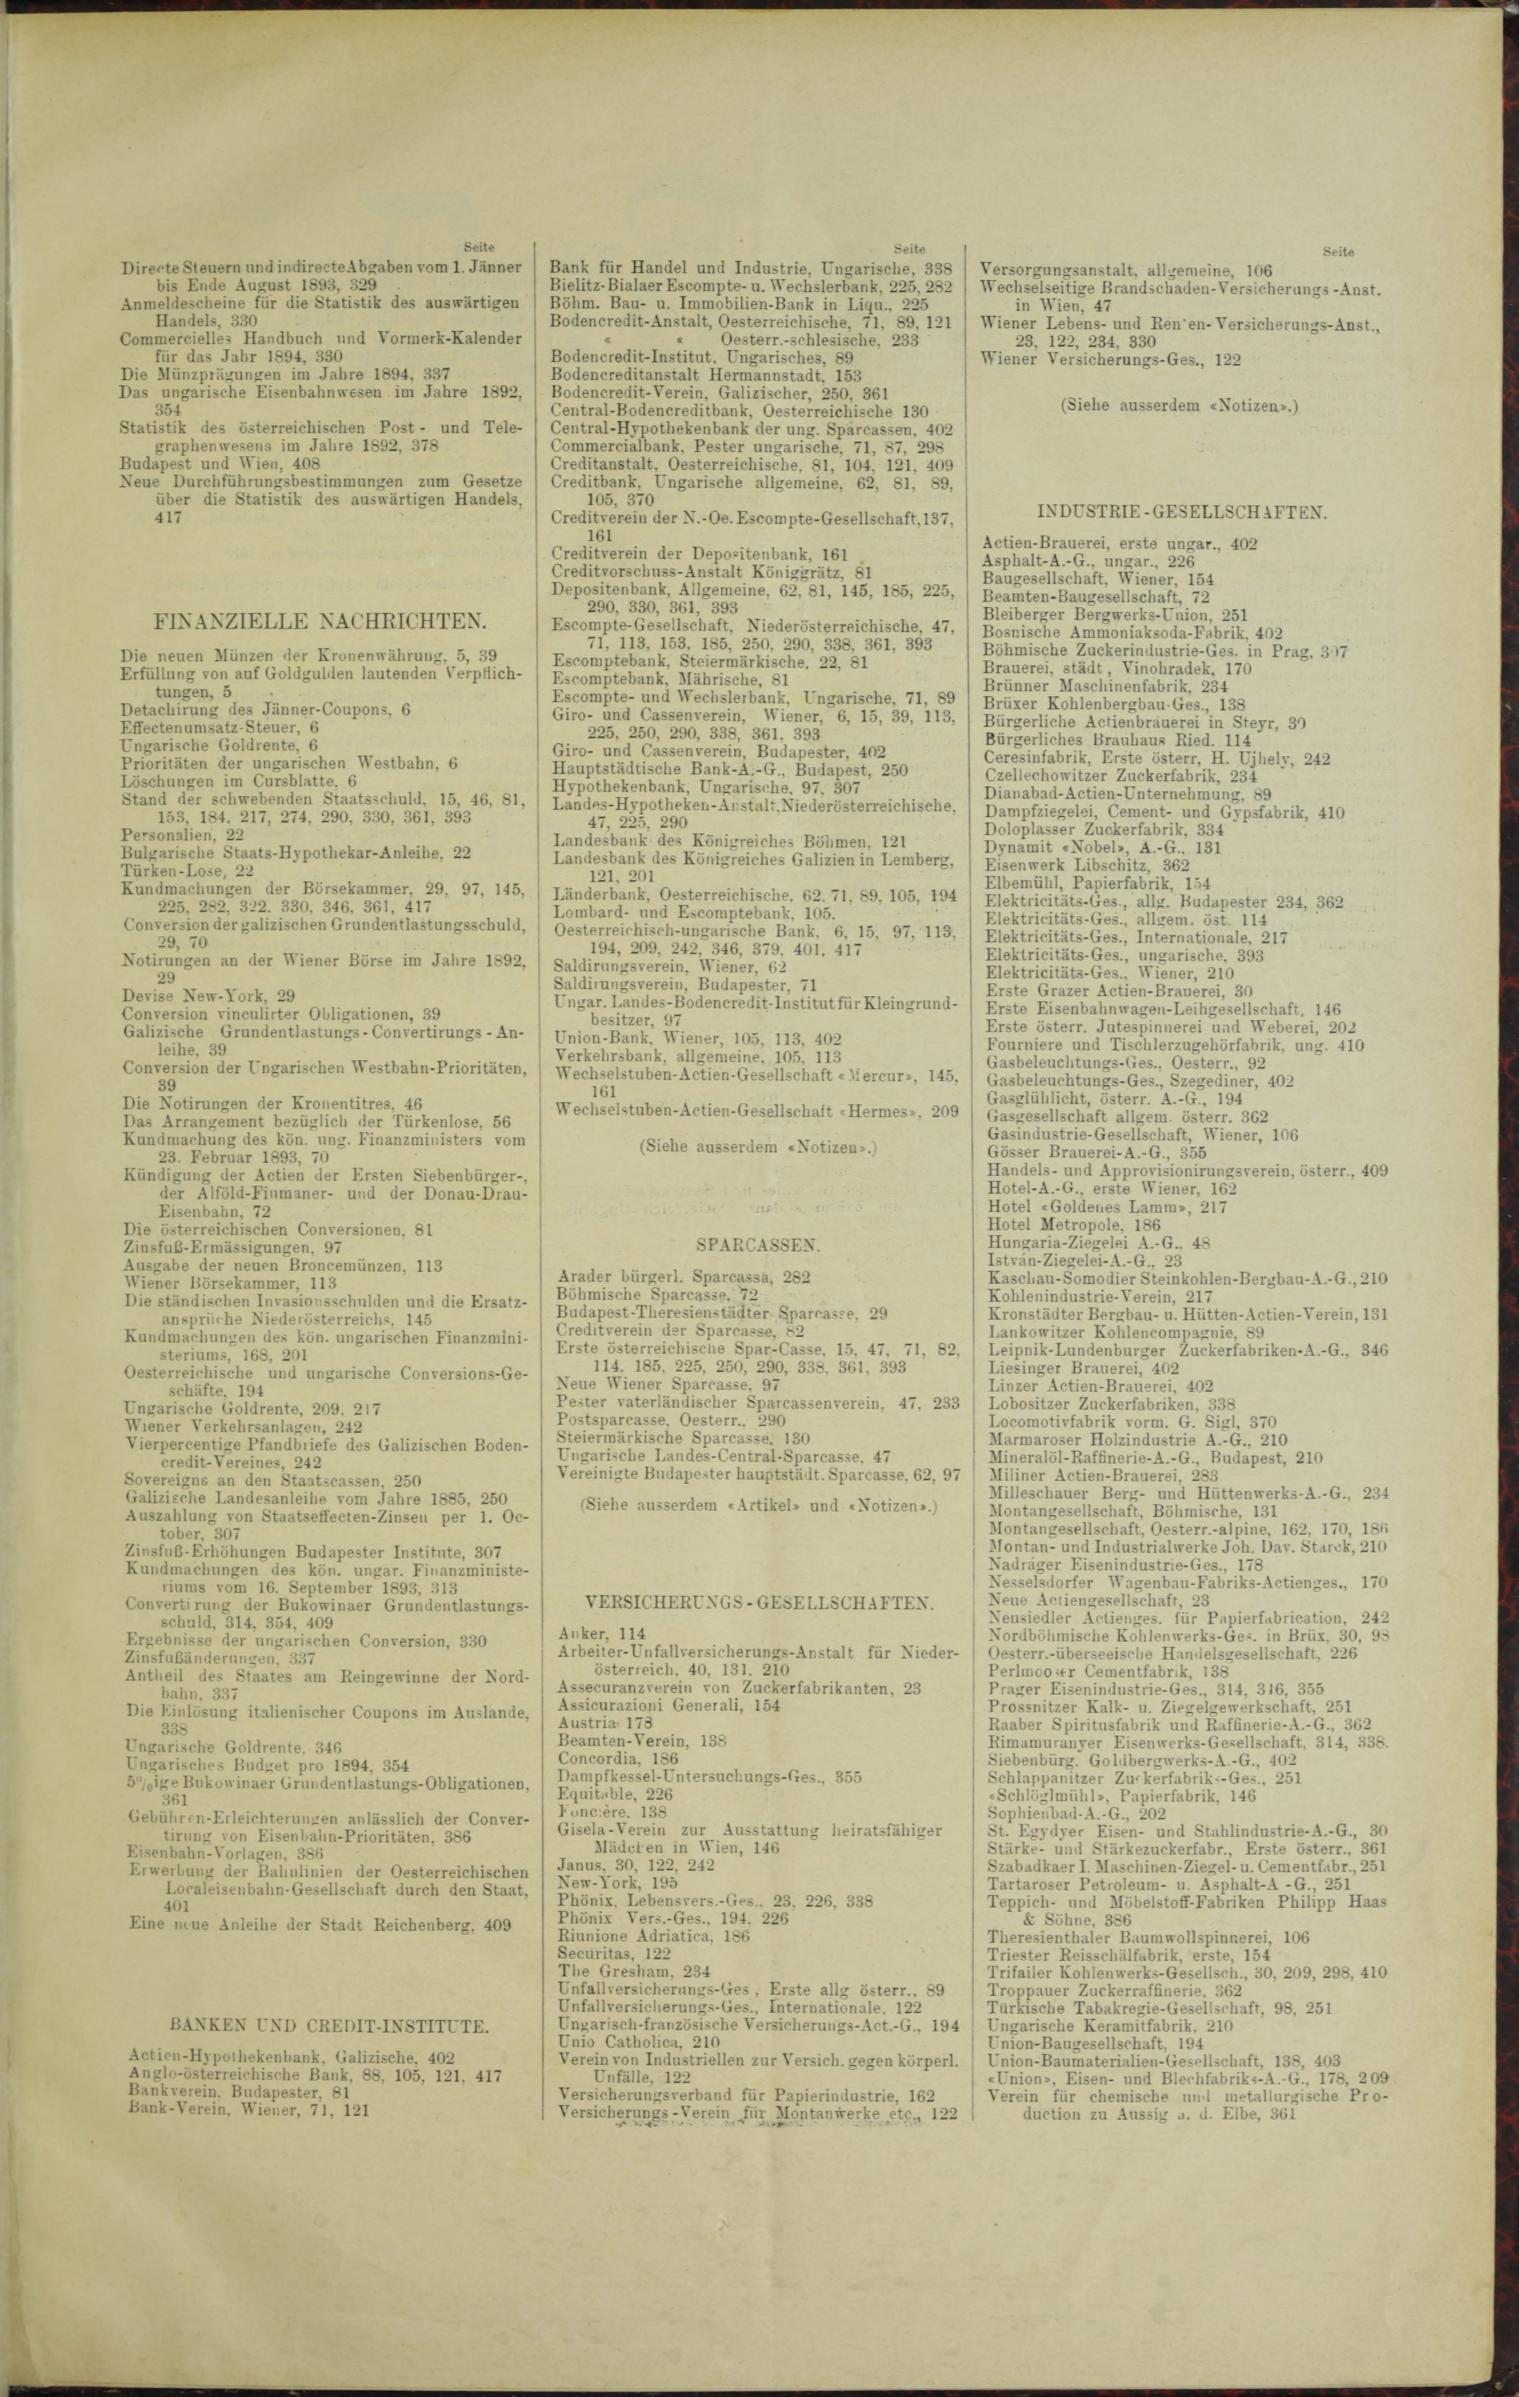 Der Tresor 29.06.1893 - Seite 11